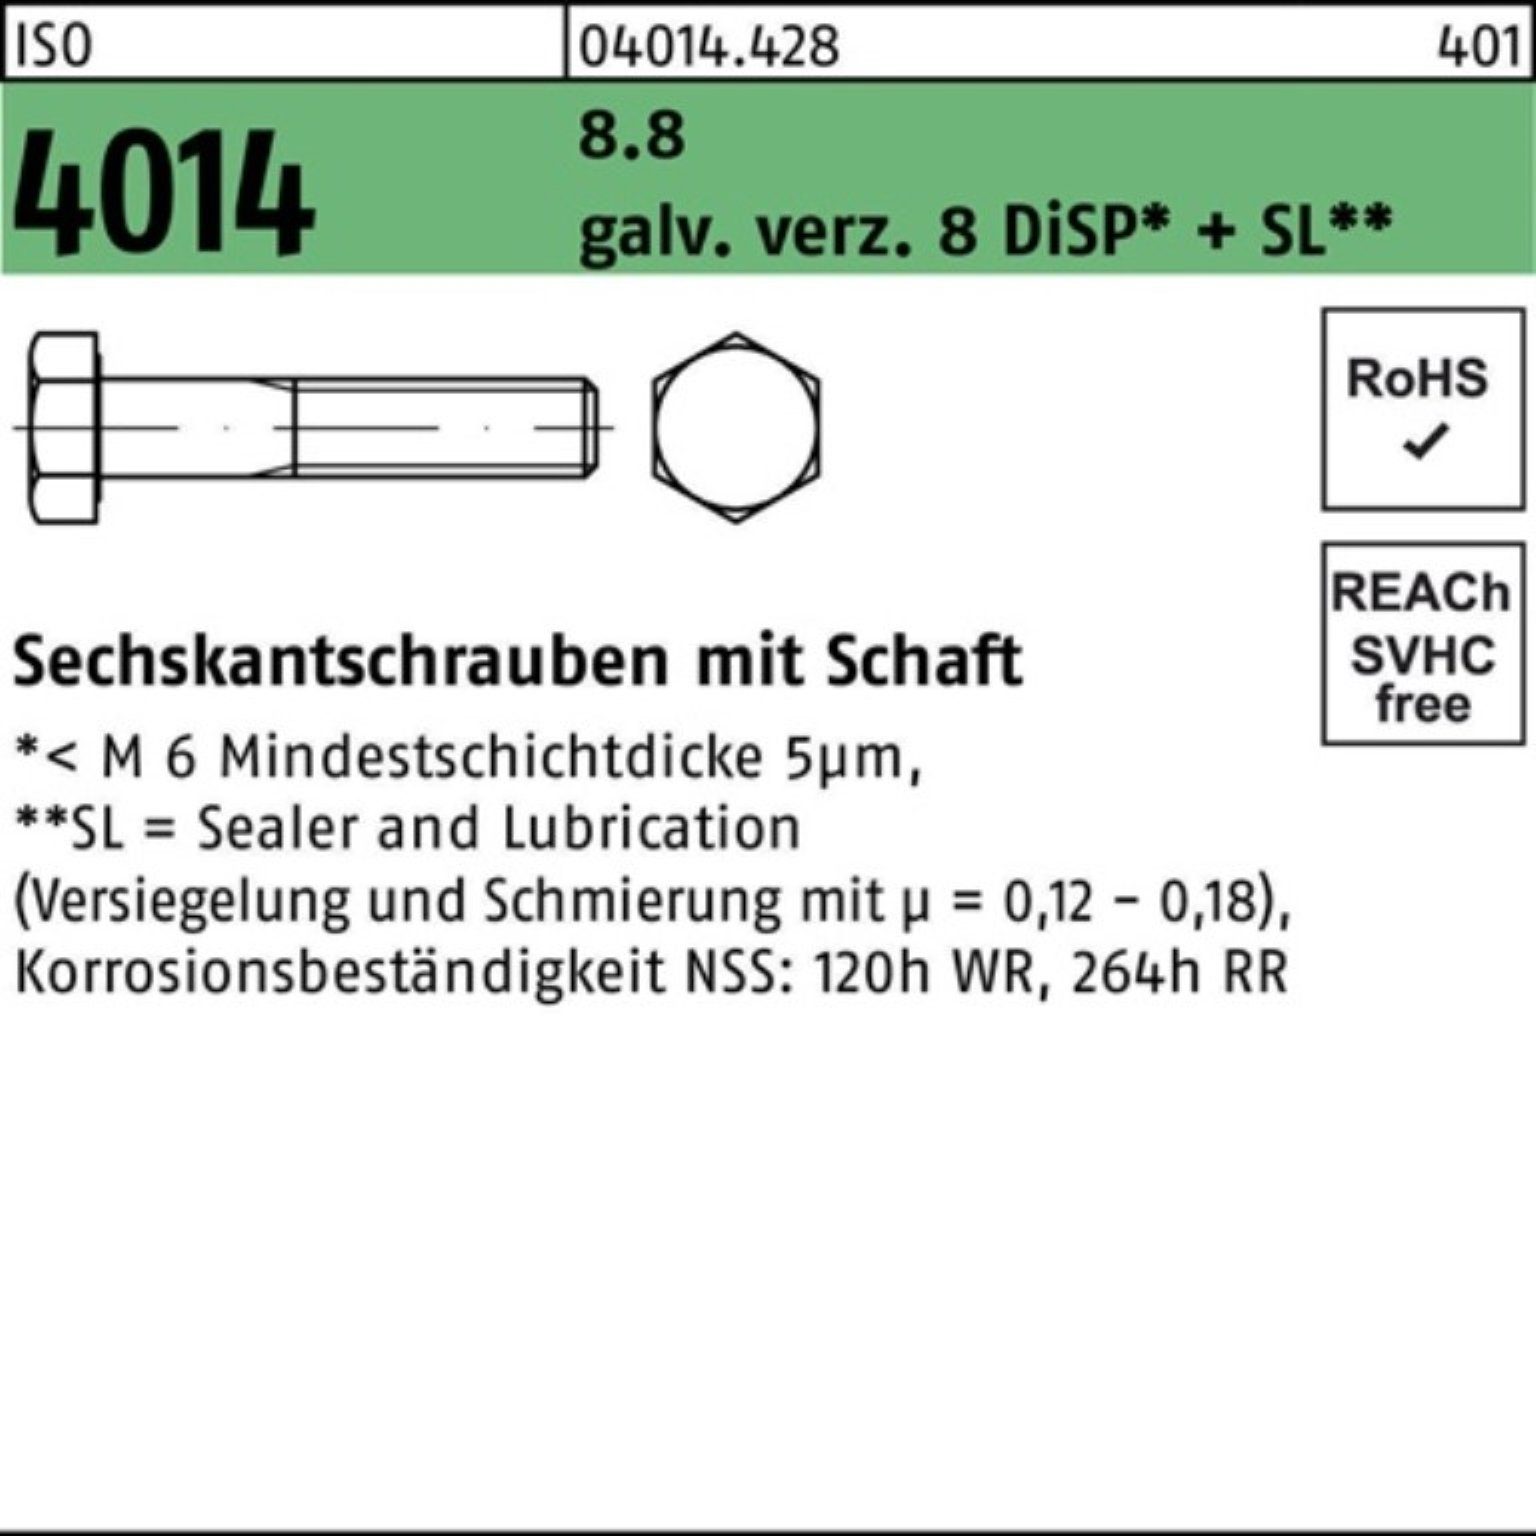 Bufab Sechskantschraube 100er Pack Sechskantschraube ISO 4014 Schaft M20x150 8.8 galv.verz. 8